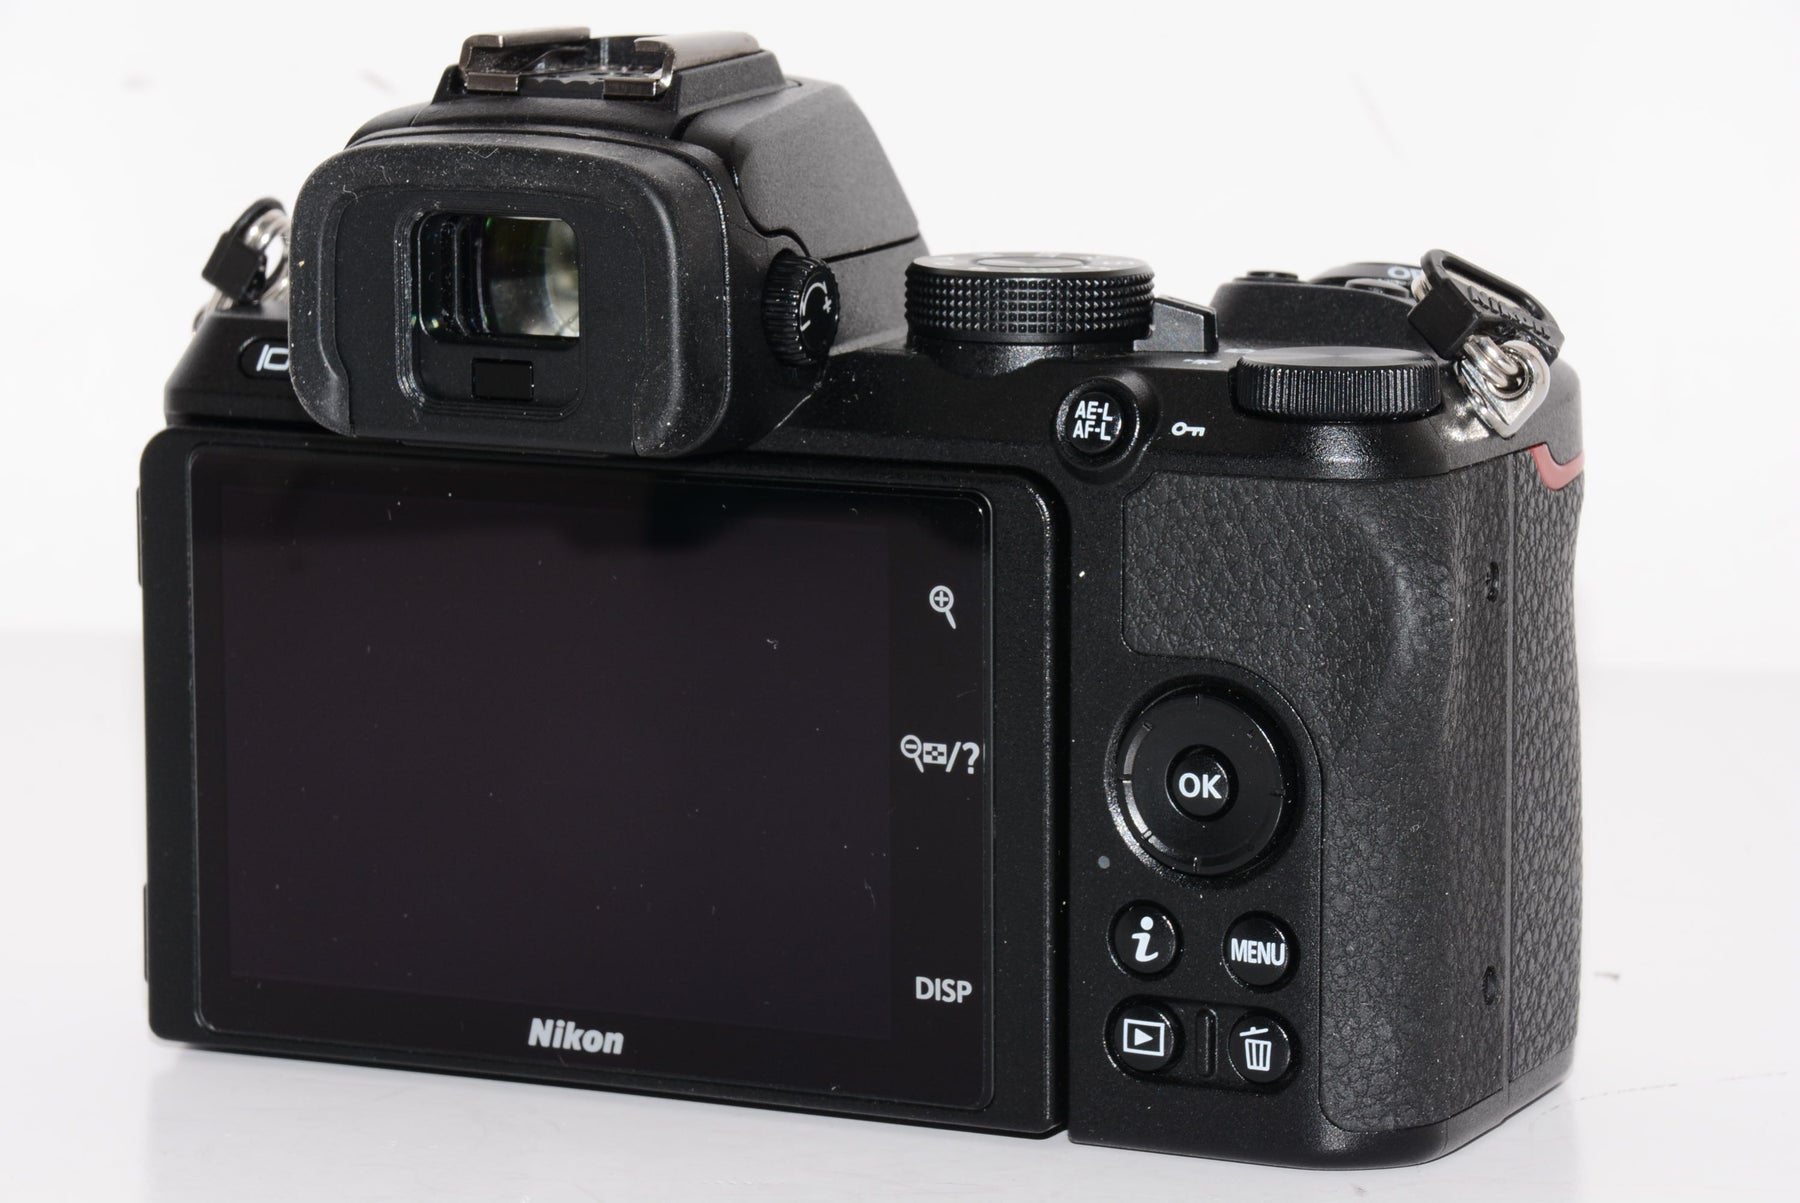 【外観特上級】Nikon ミラーレス一眼カメラ Z50 レンズキット NIKKOR Z DX 16-50mm f/3.5-6.3 VR付属 Z50LK16-50 ブラック